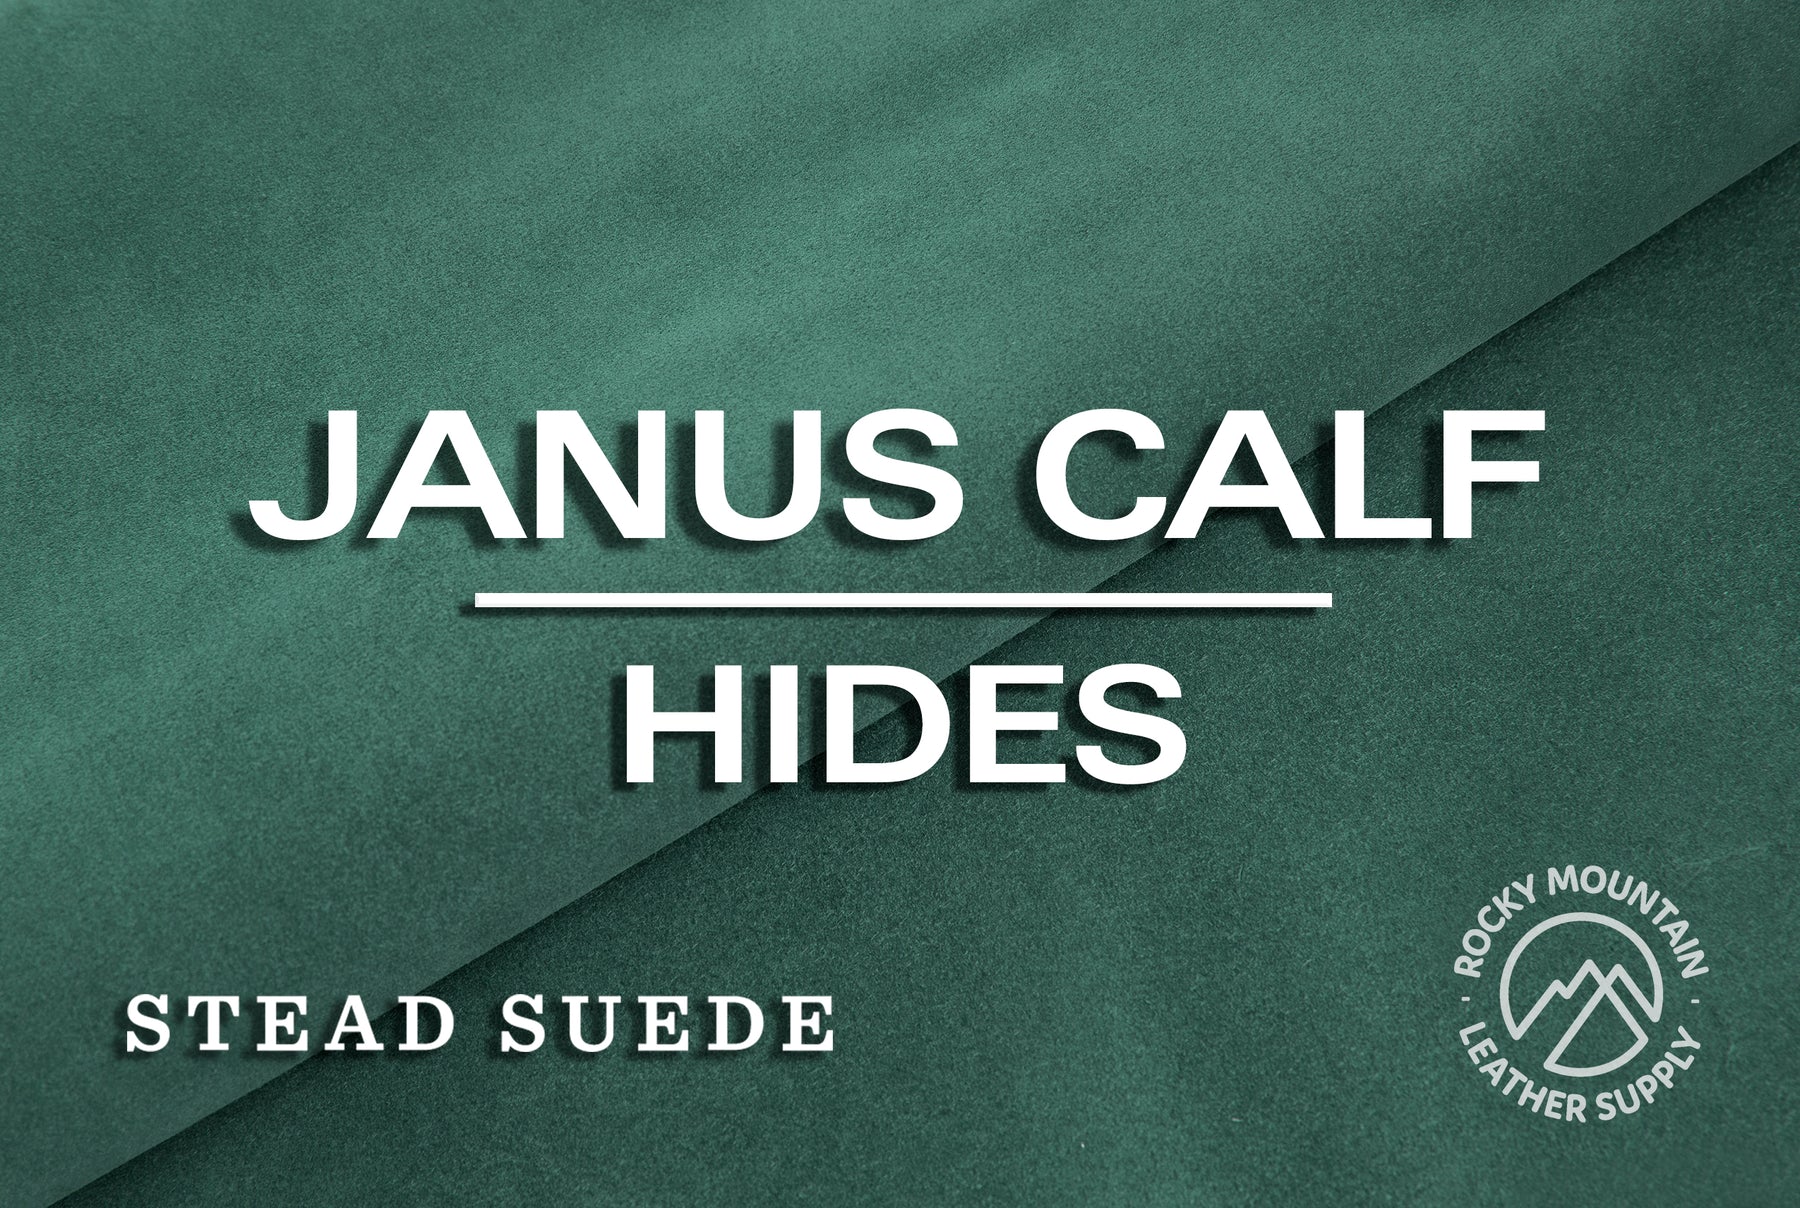 CF Stead 🇬🇧 - Janus Calf Suede -  Luxury Suede Leather (HIDES)